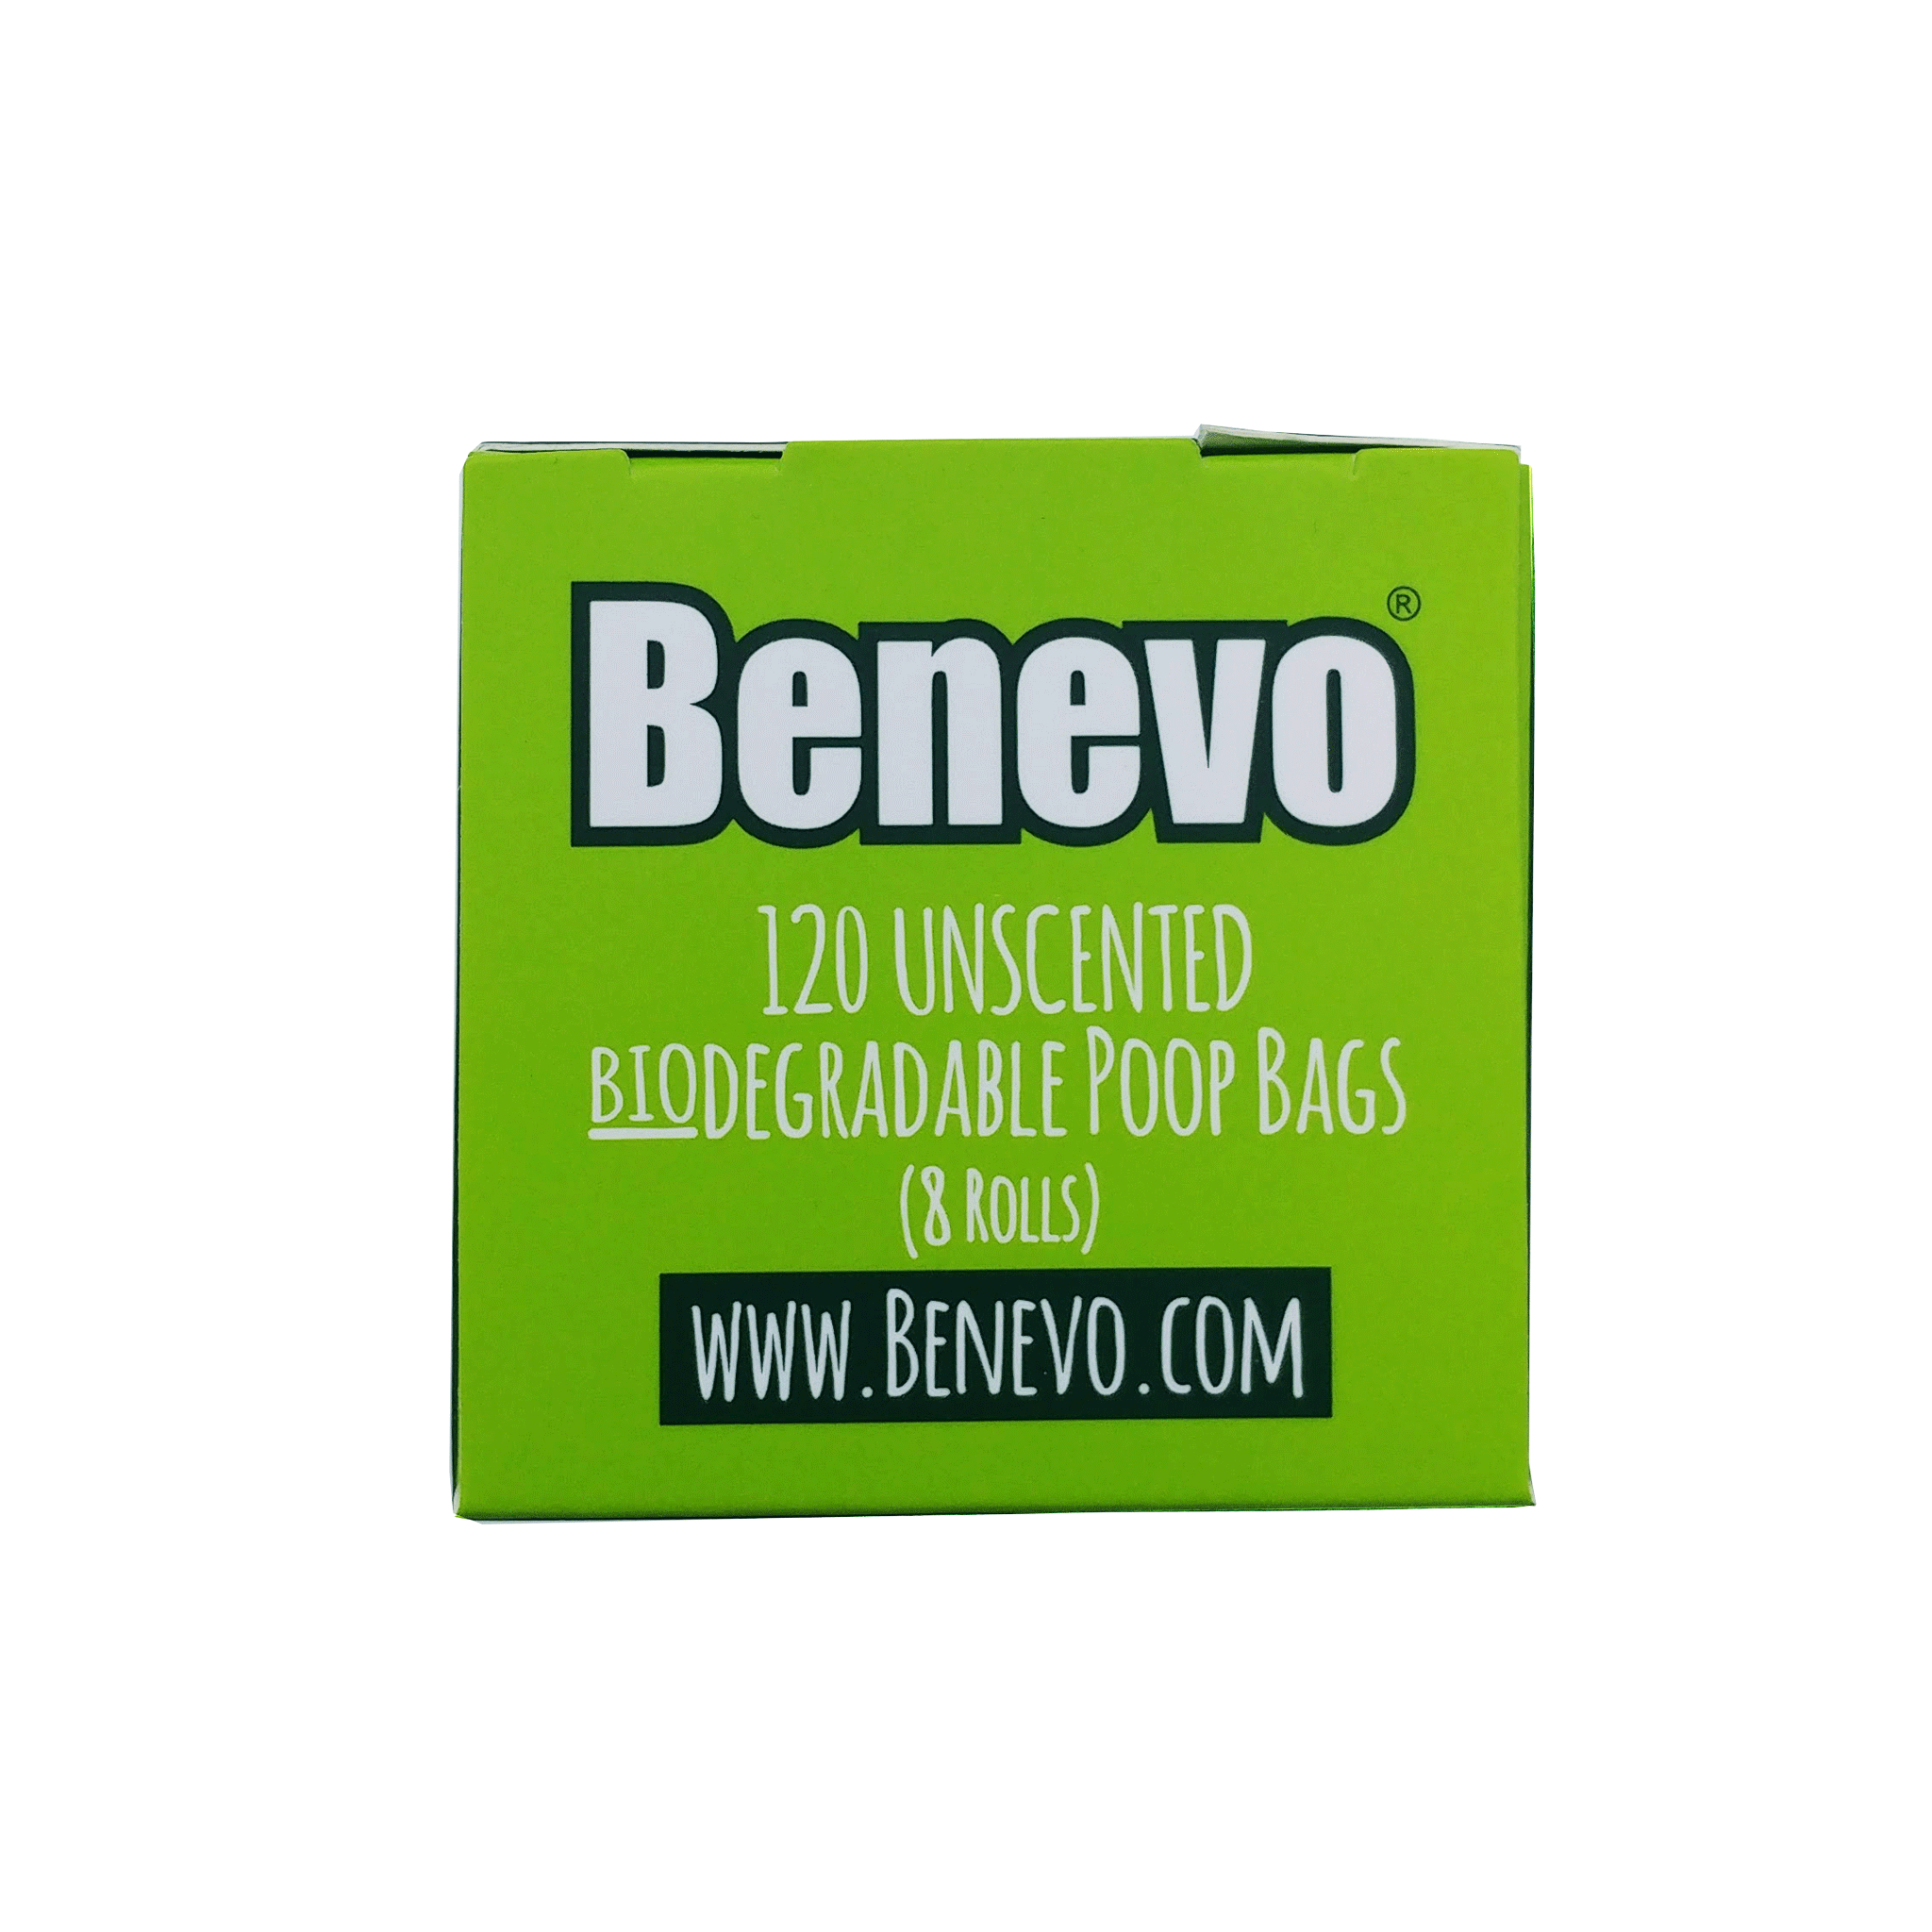 Benevo Biodegradable Poop Bags - 120 bags